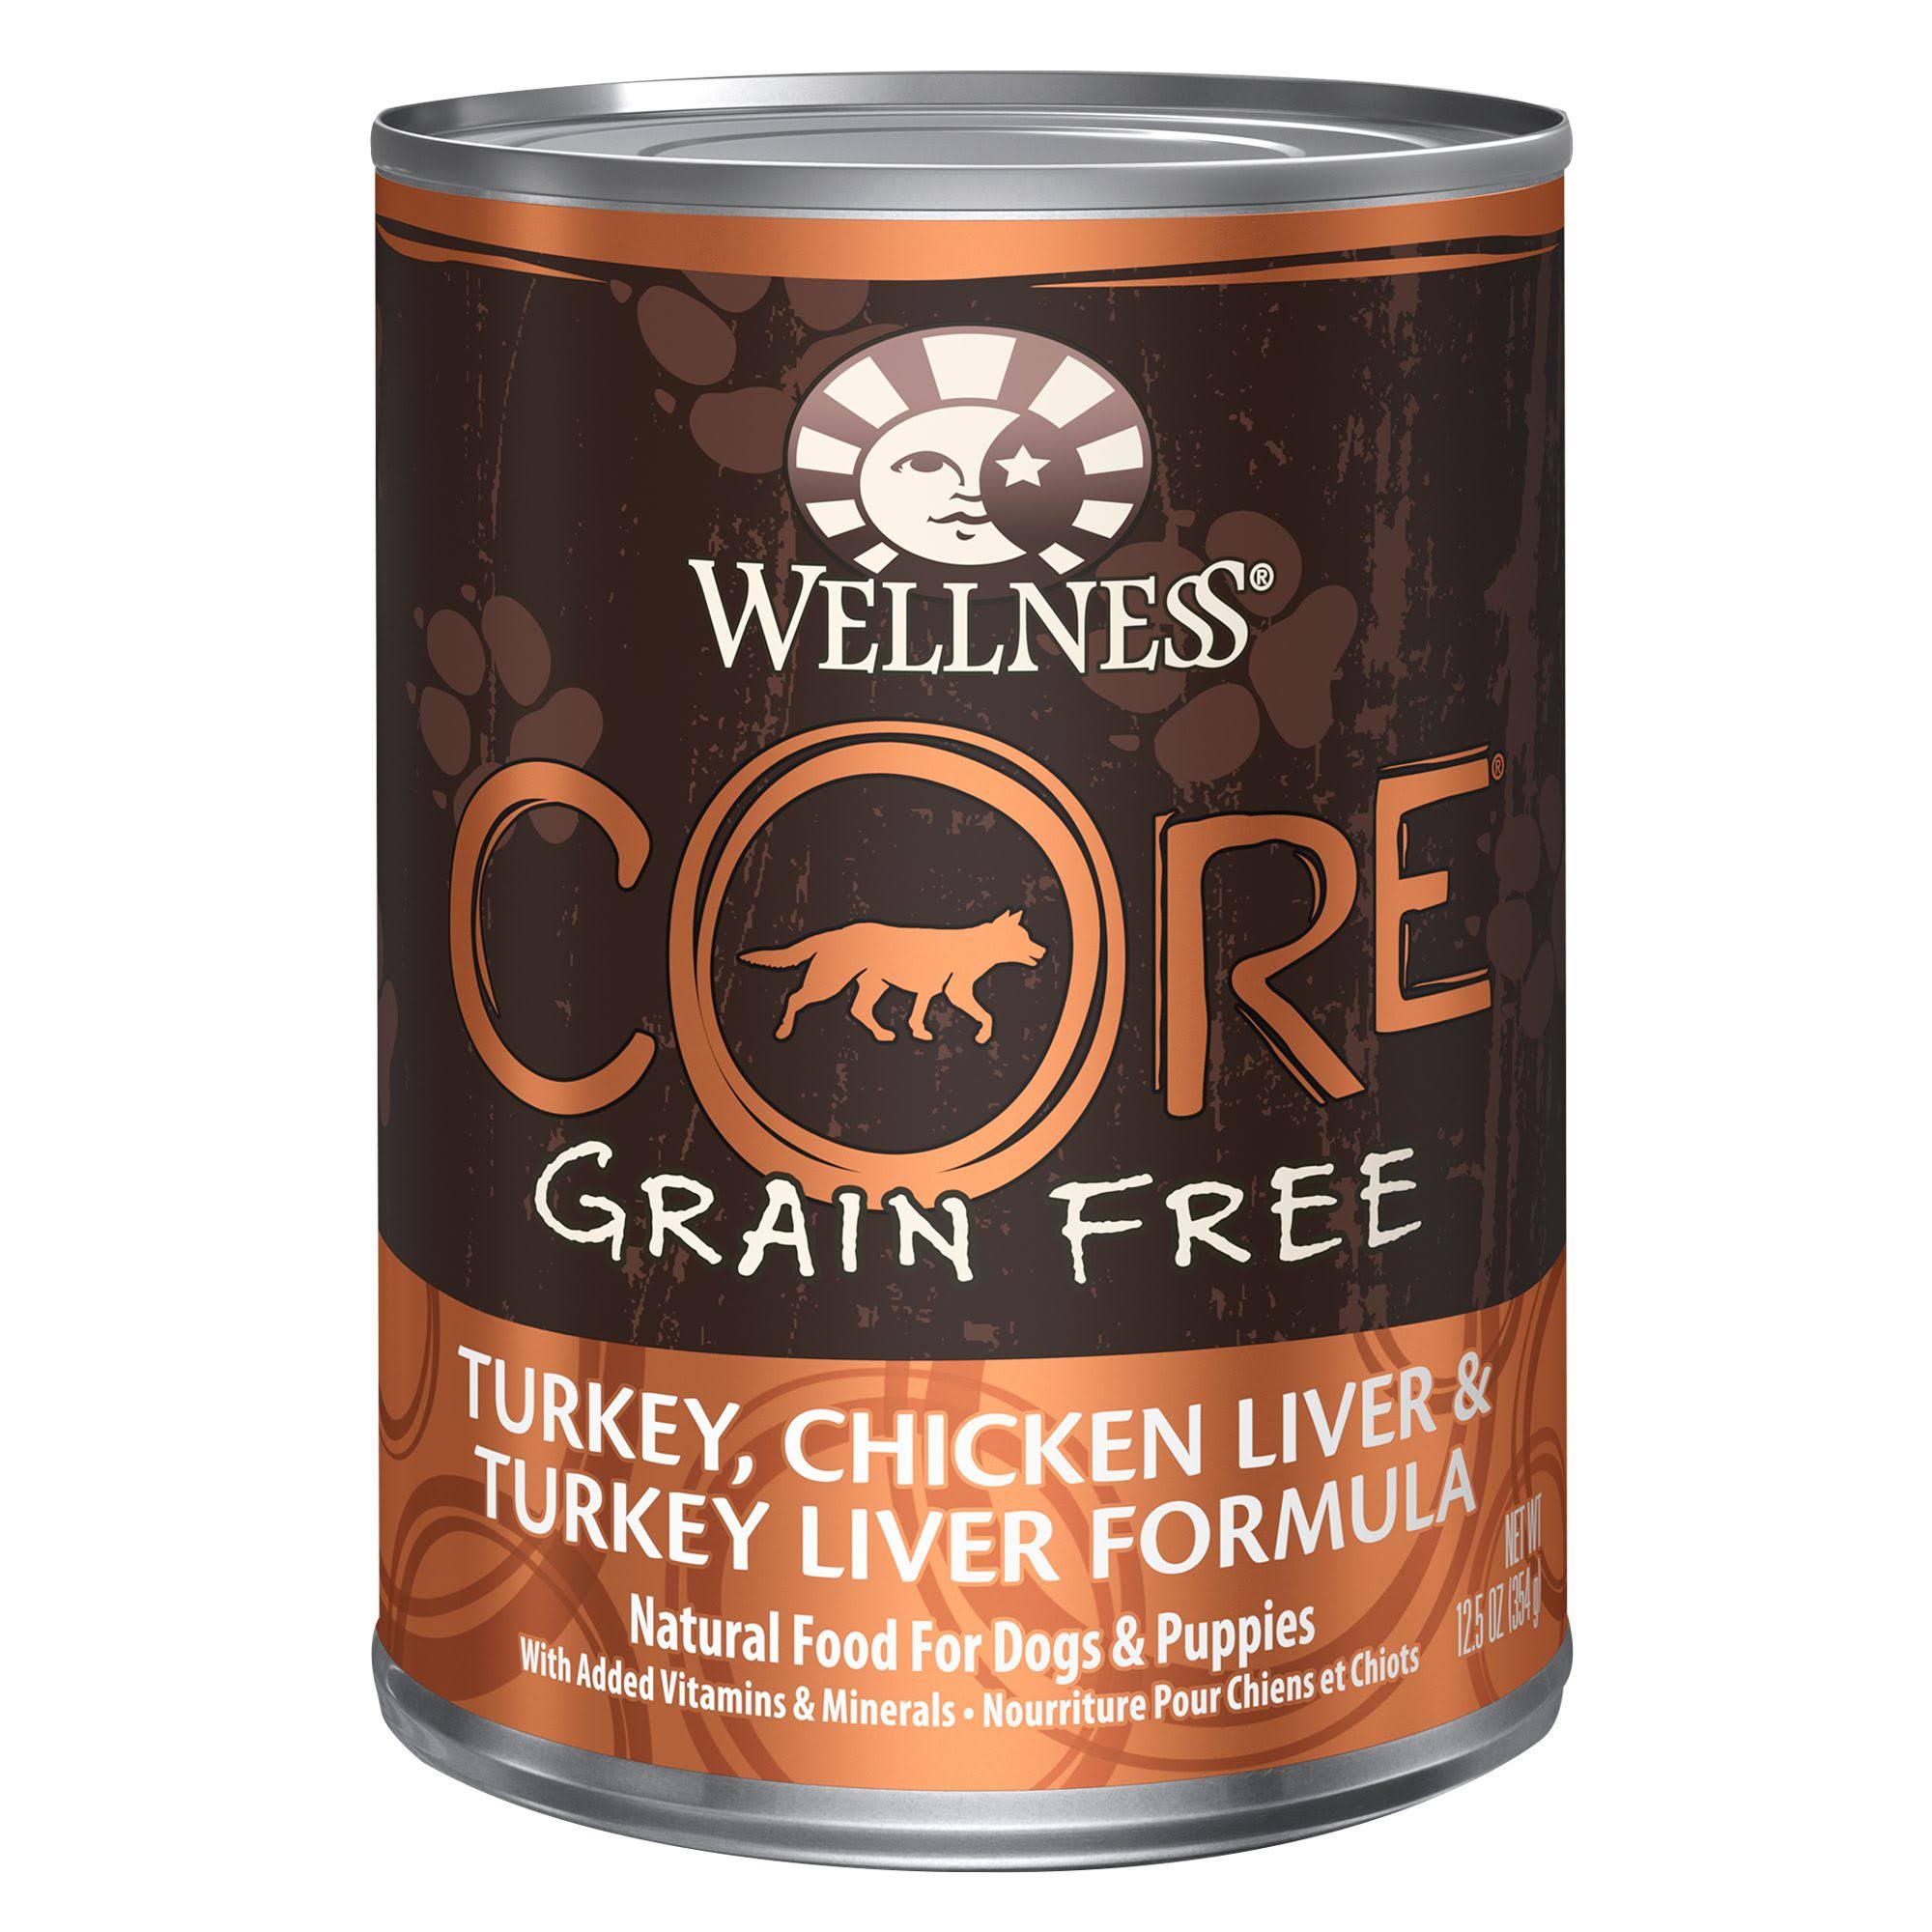 Wellness Core Adult Dog Food - Turkey, Chicken Liver & Turkey Liver, 12.5oz